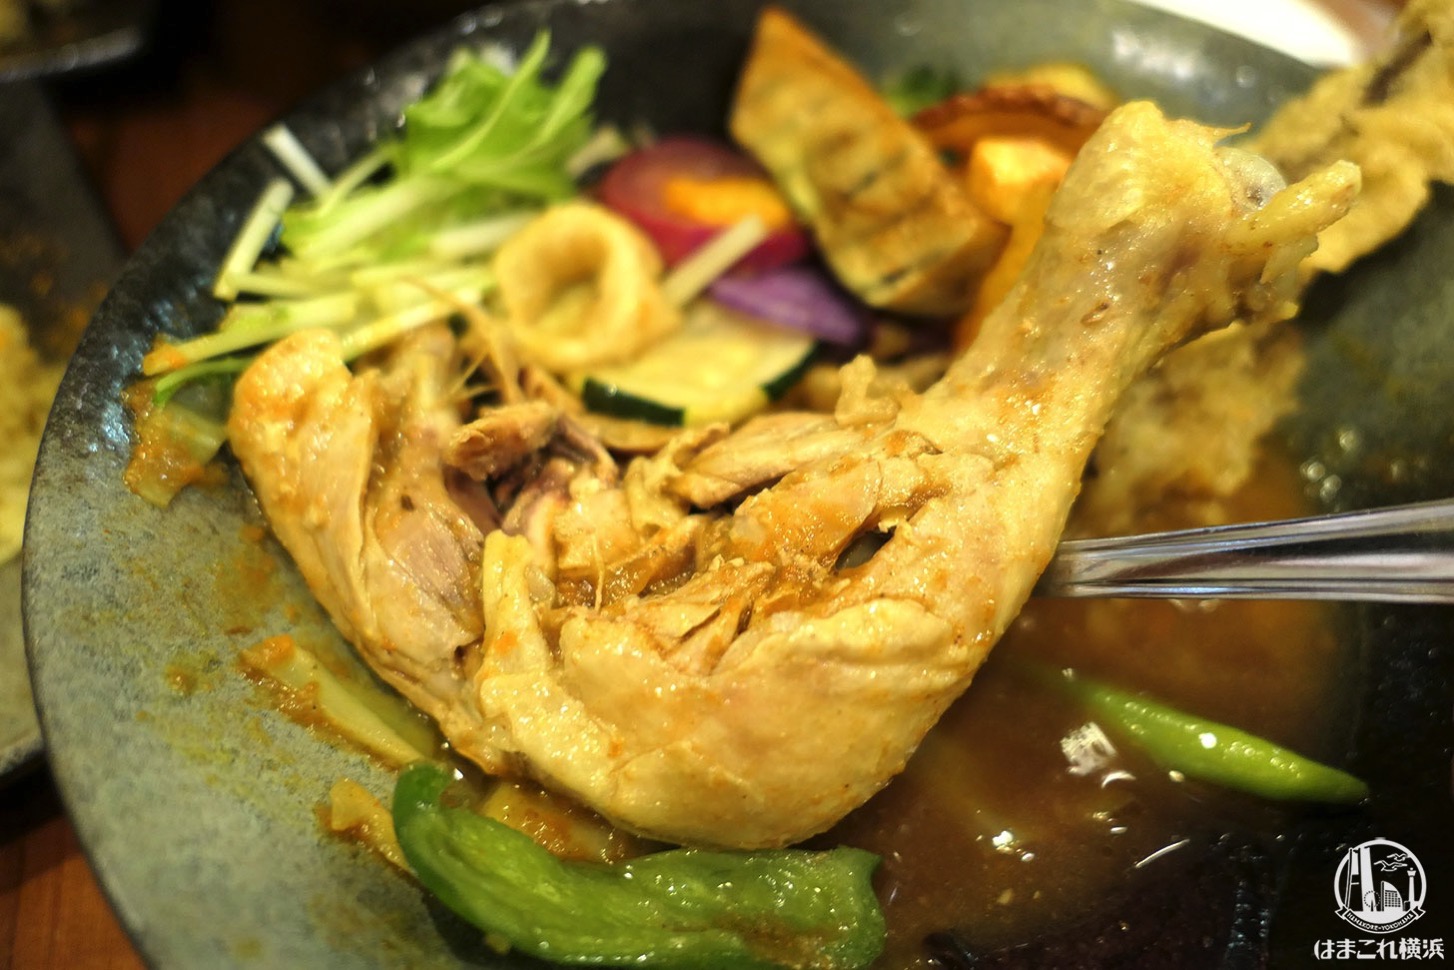 チキンと鎌倉野菜16品野菜のスープカレー 骨付きチキン